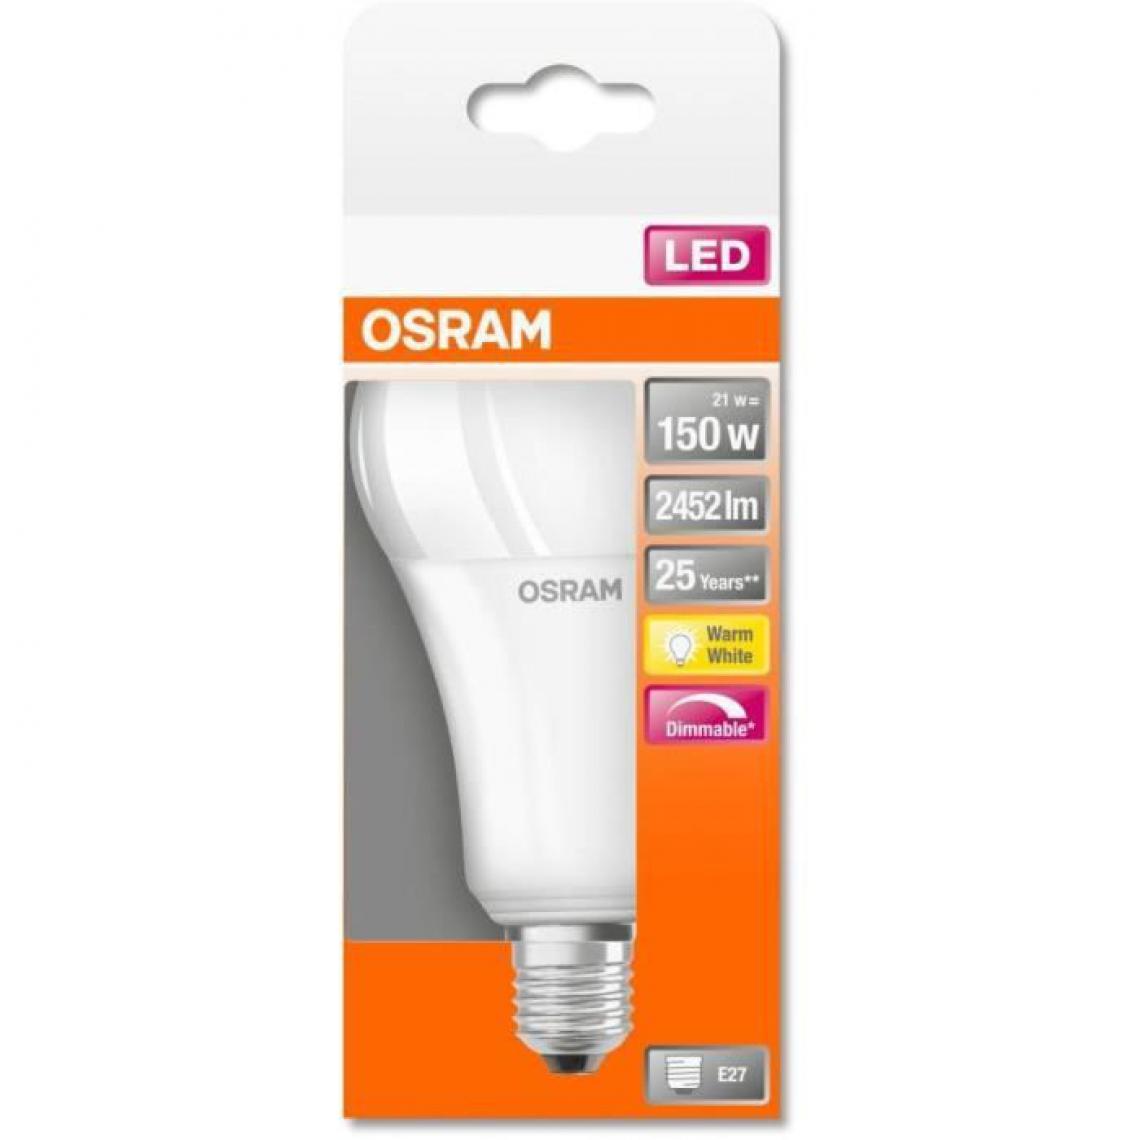 Osram - Ampoule LED Standard dépolie radiateur variable - 21W - Ampoules LED